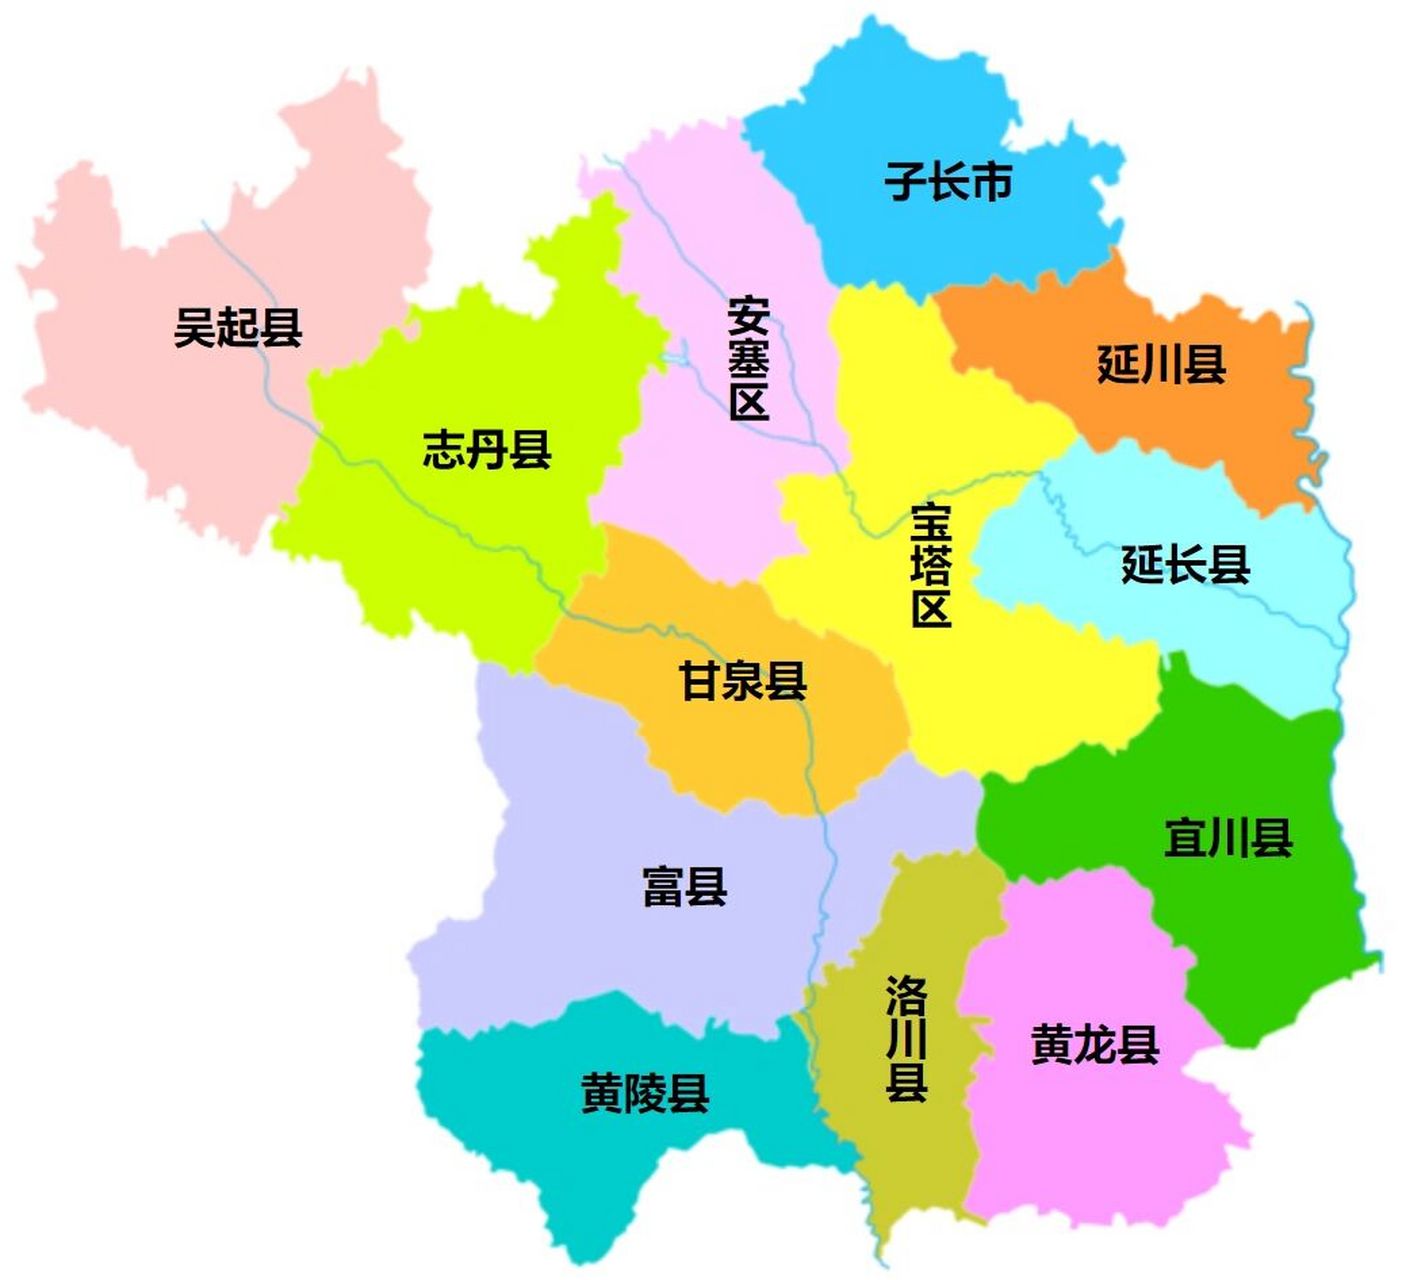 延安全市划分为 2个区:宝塔区,安塞区; 10个县:黄陵县,黄龙县,宜川